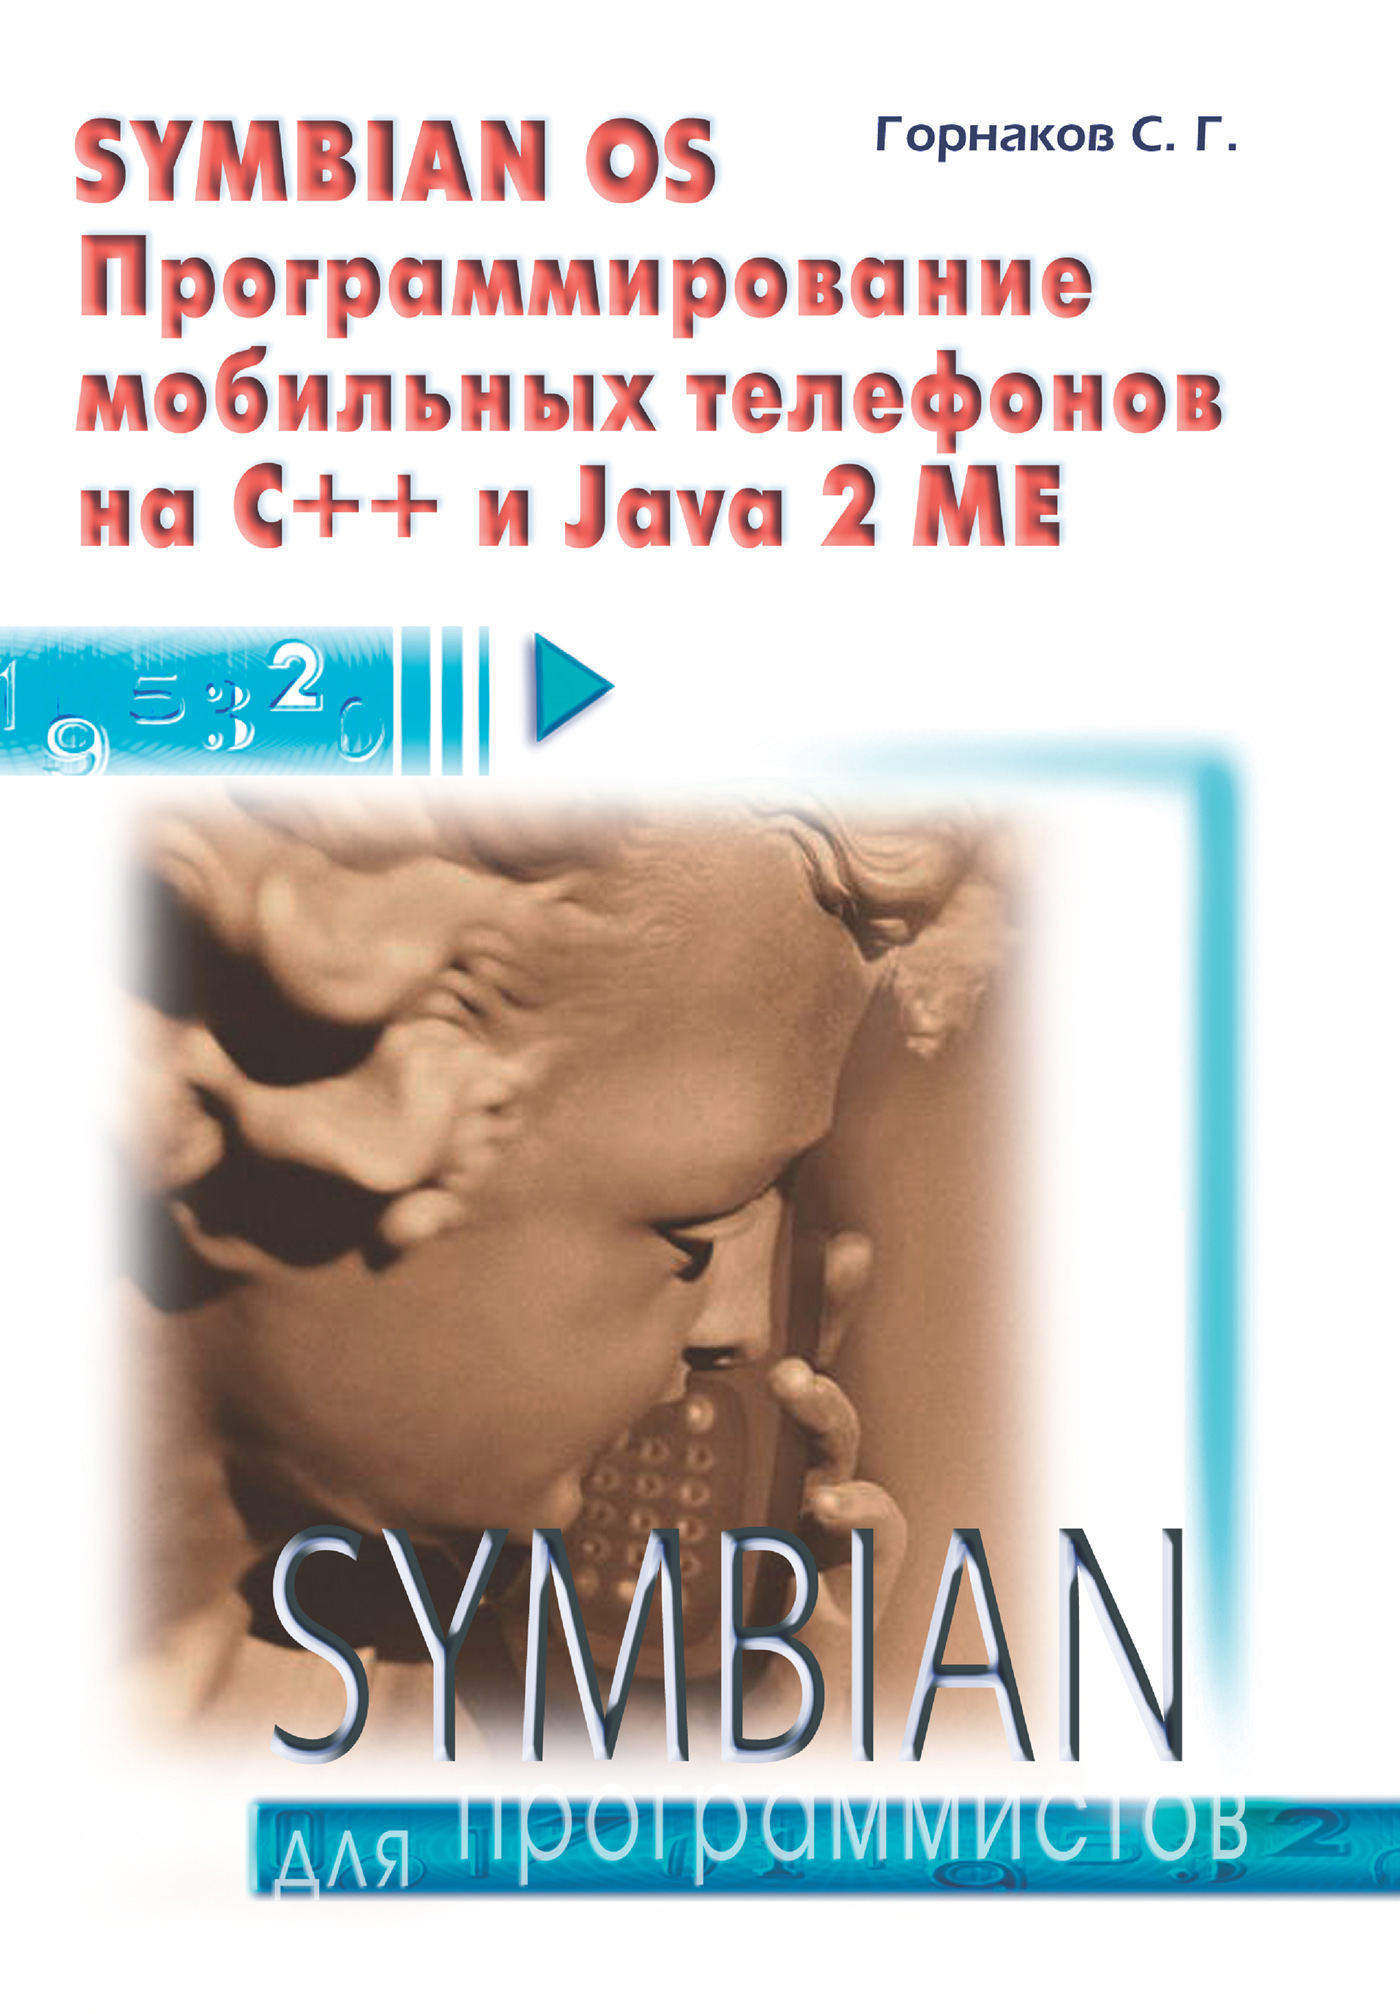 Книга  Symbian OS. Программирование мобильных телефонов на C++ и Java 2 ME созданная Станислав Горнаков может относится к жанру ОС и сети, программирование. Стоимость электронной книги Symbian OS. Программирование мобильных телефонов на C++ и Java 2 ME с идентификатором 430062 составляет 239.00 руб.